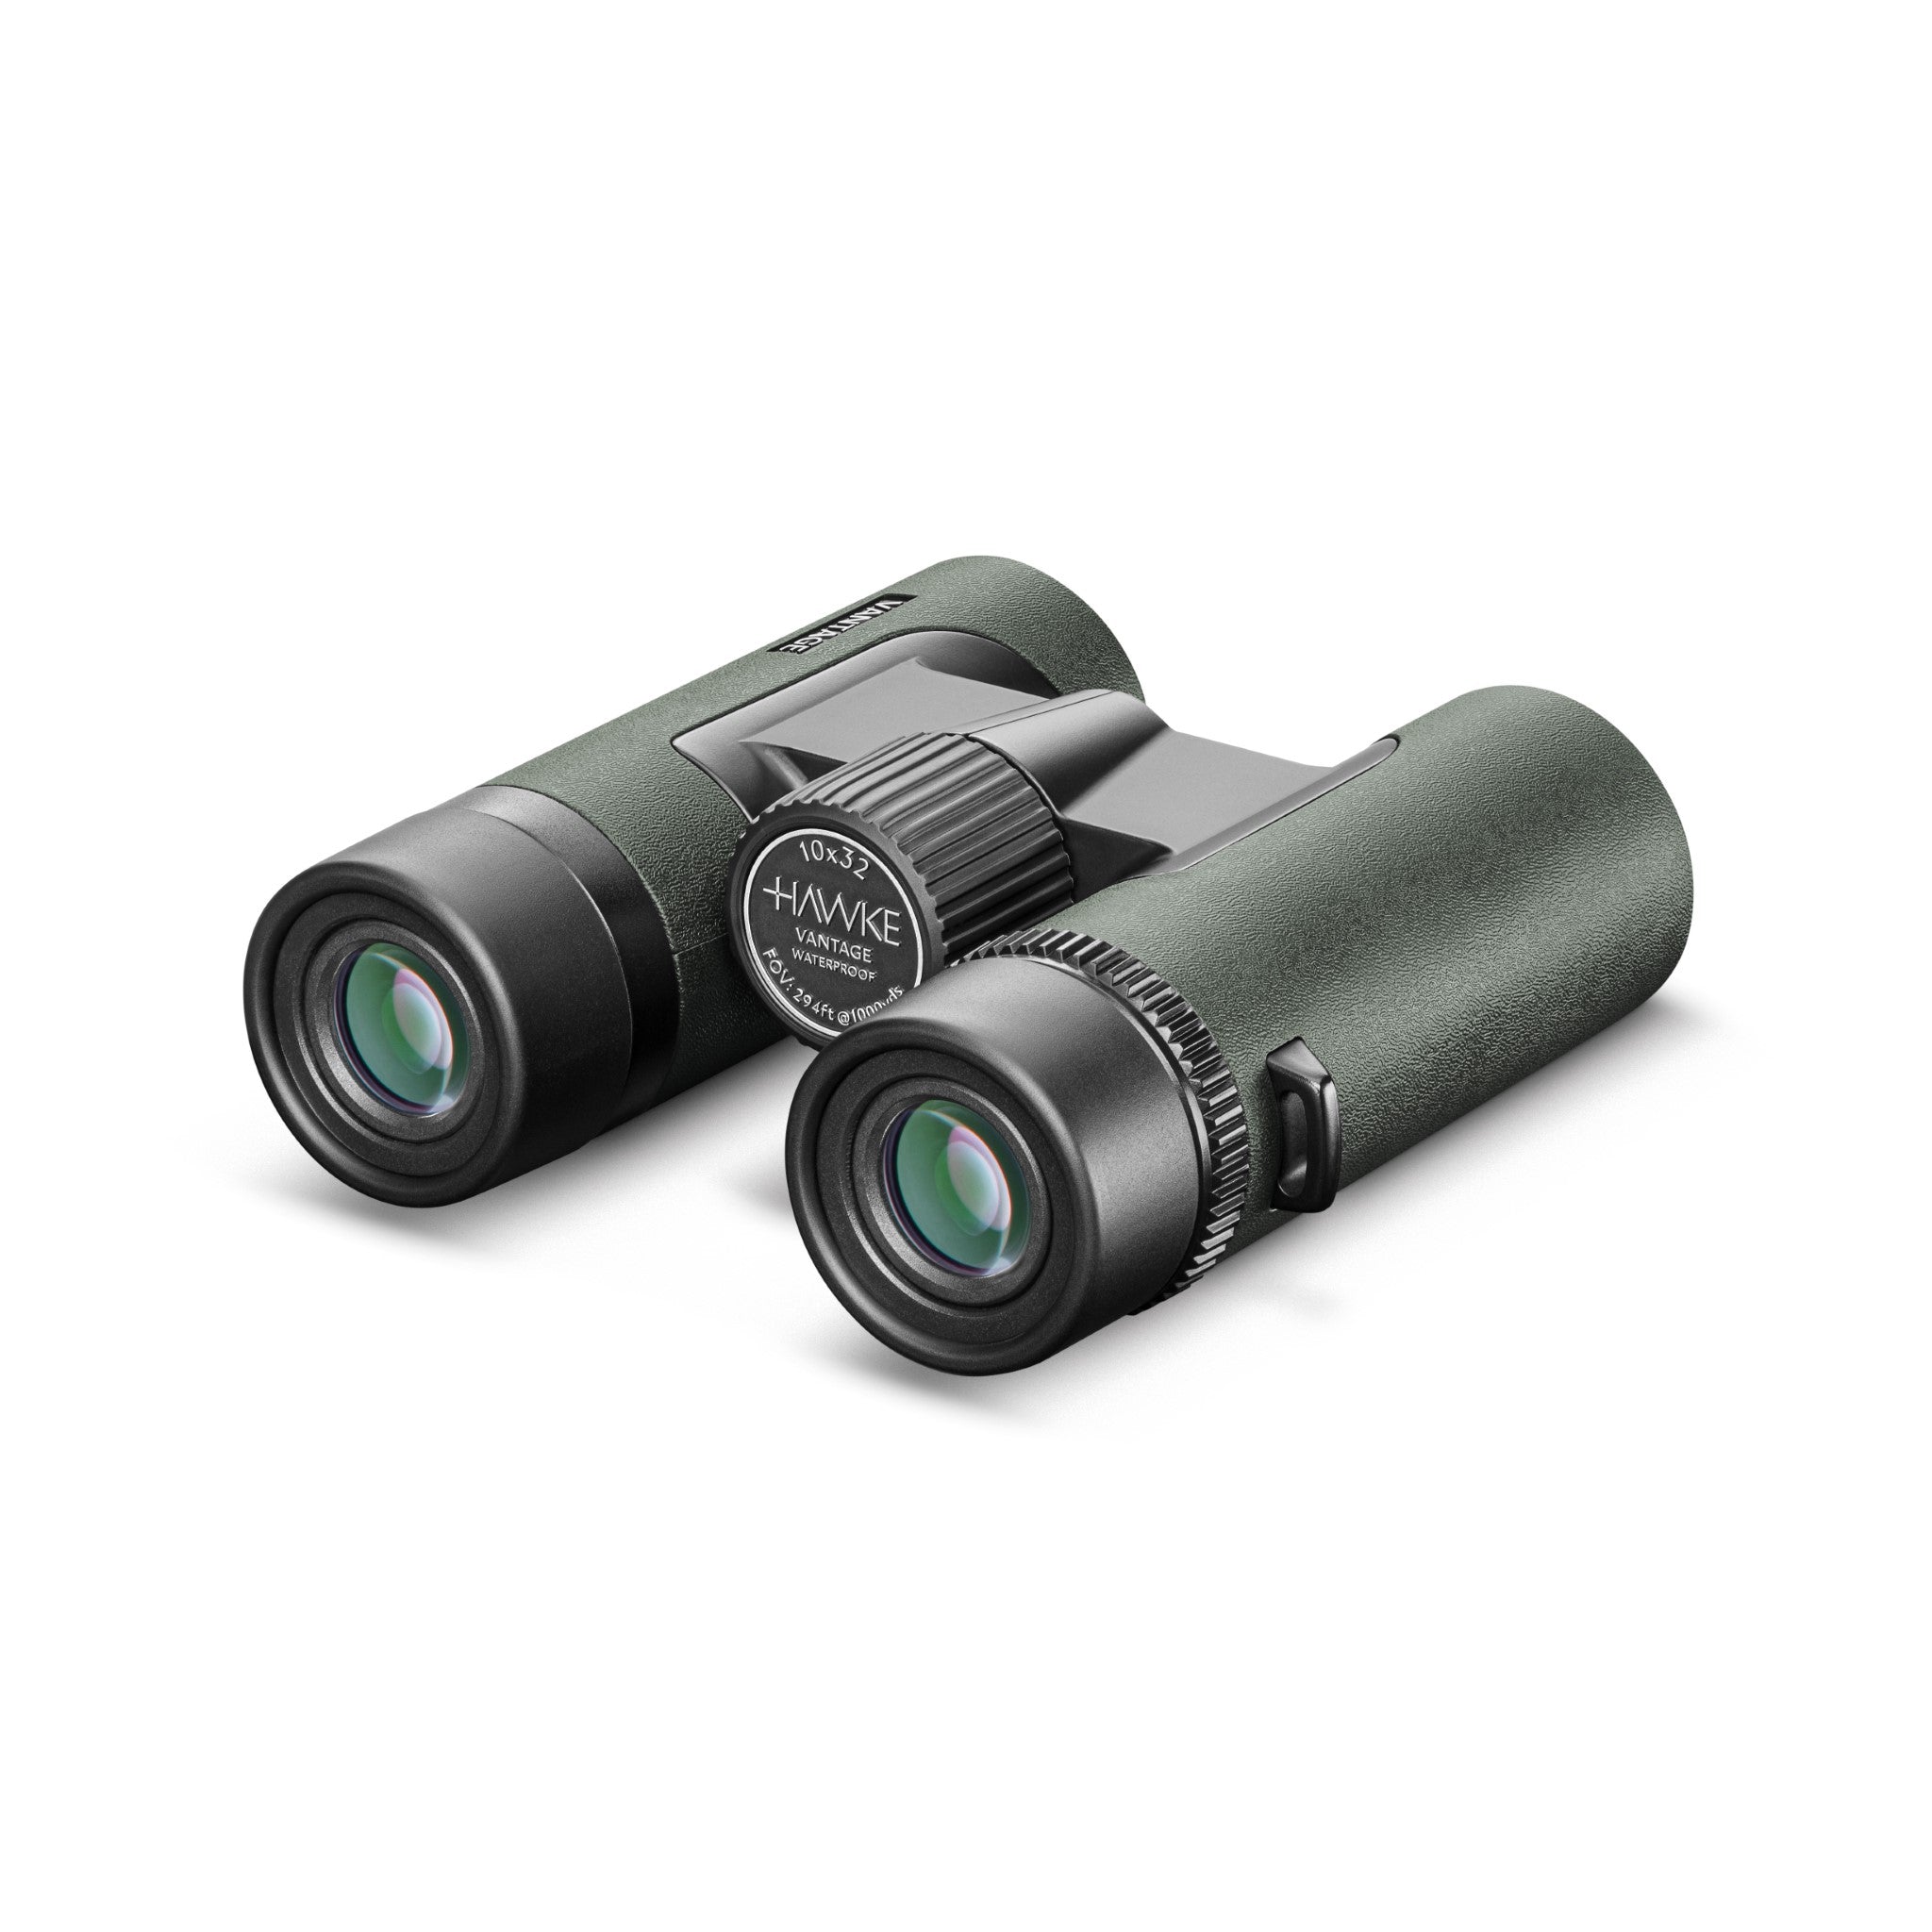 Hawke Vantage 10x32 WP Binoculars (Green)